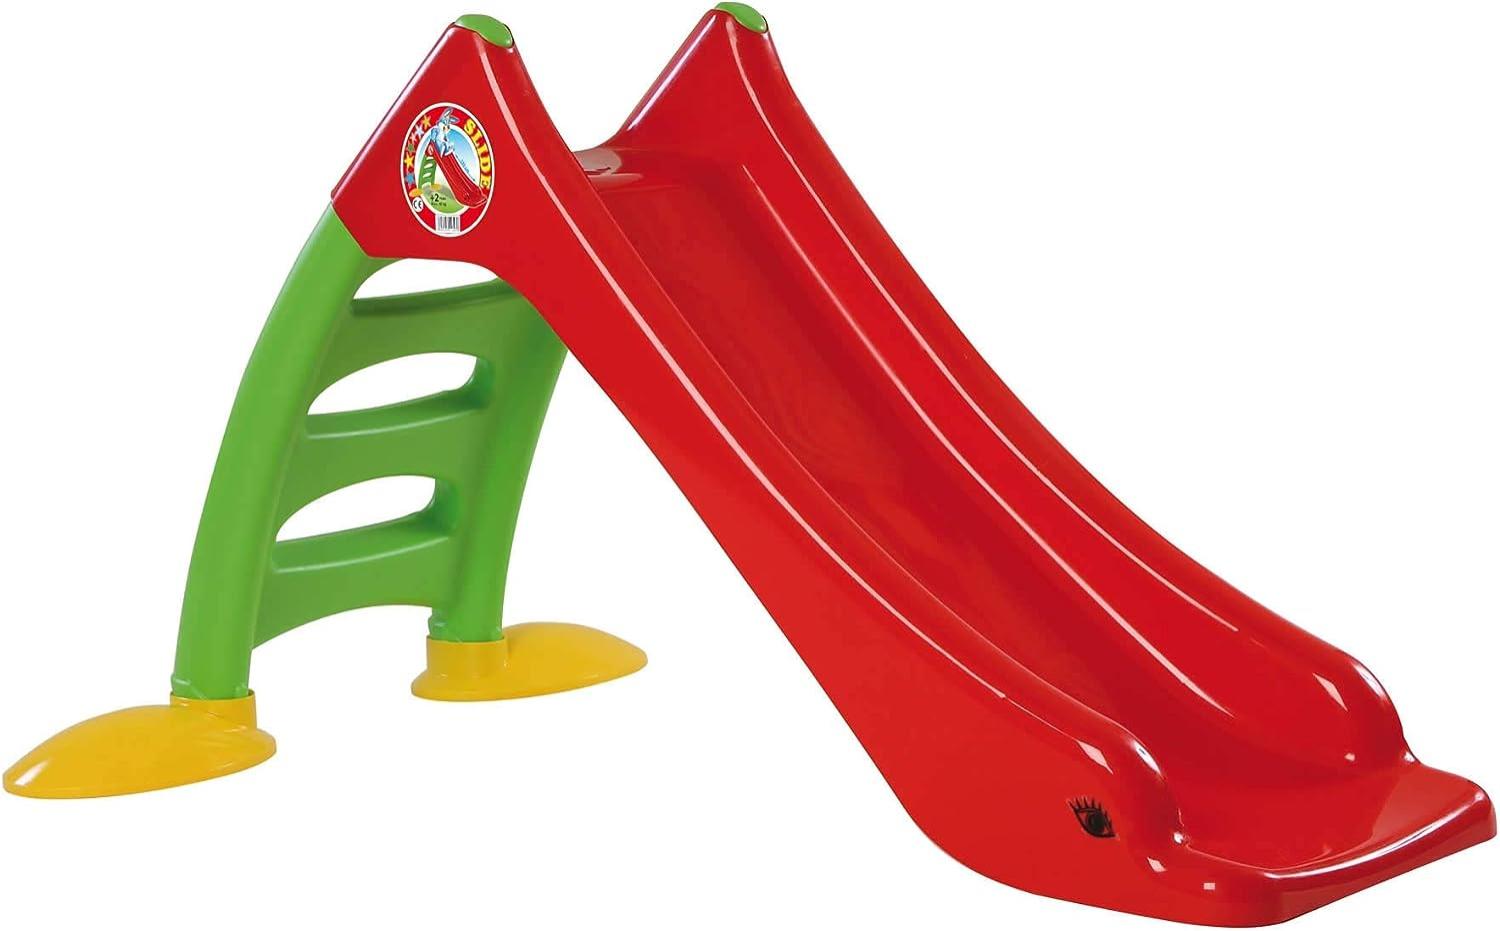 Dohany 2in1 Kinderrutsche Wasserrutsche freistehend Rutschbahn Rutschlänge 120 cm (rot/grün) Bild 1